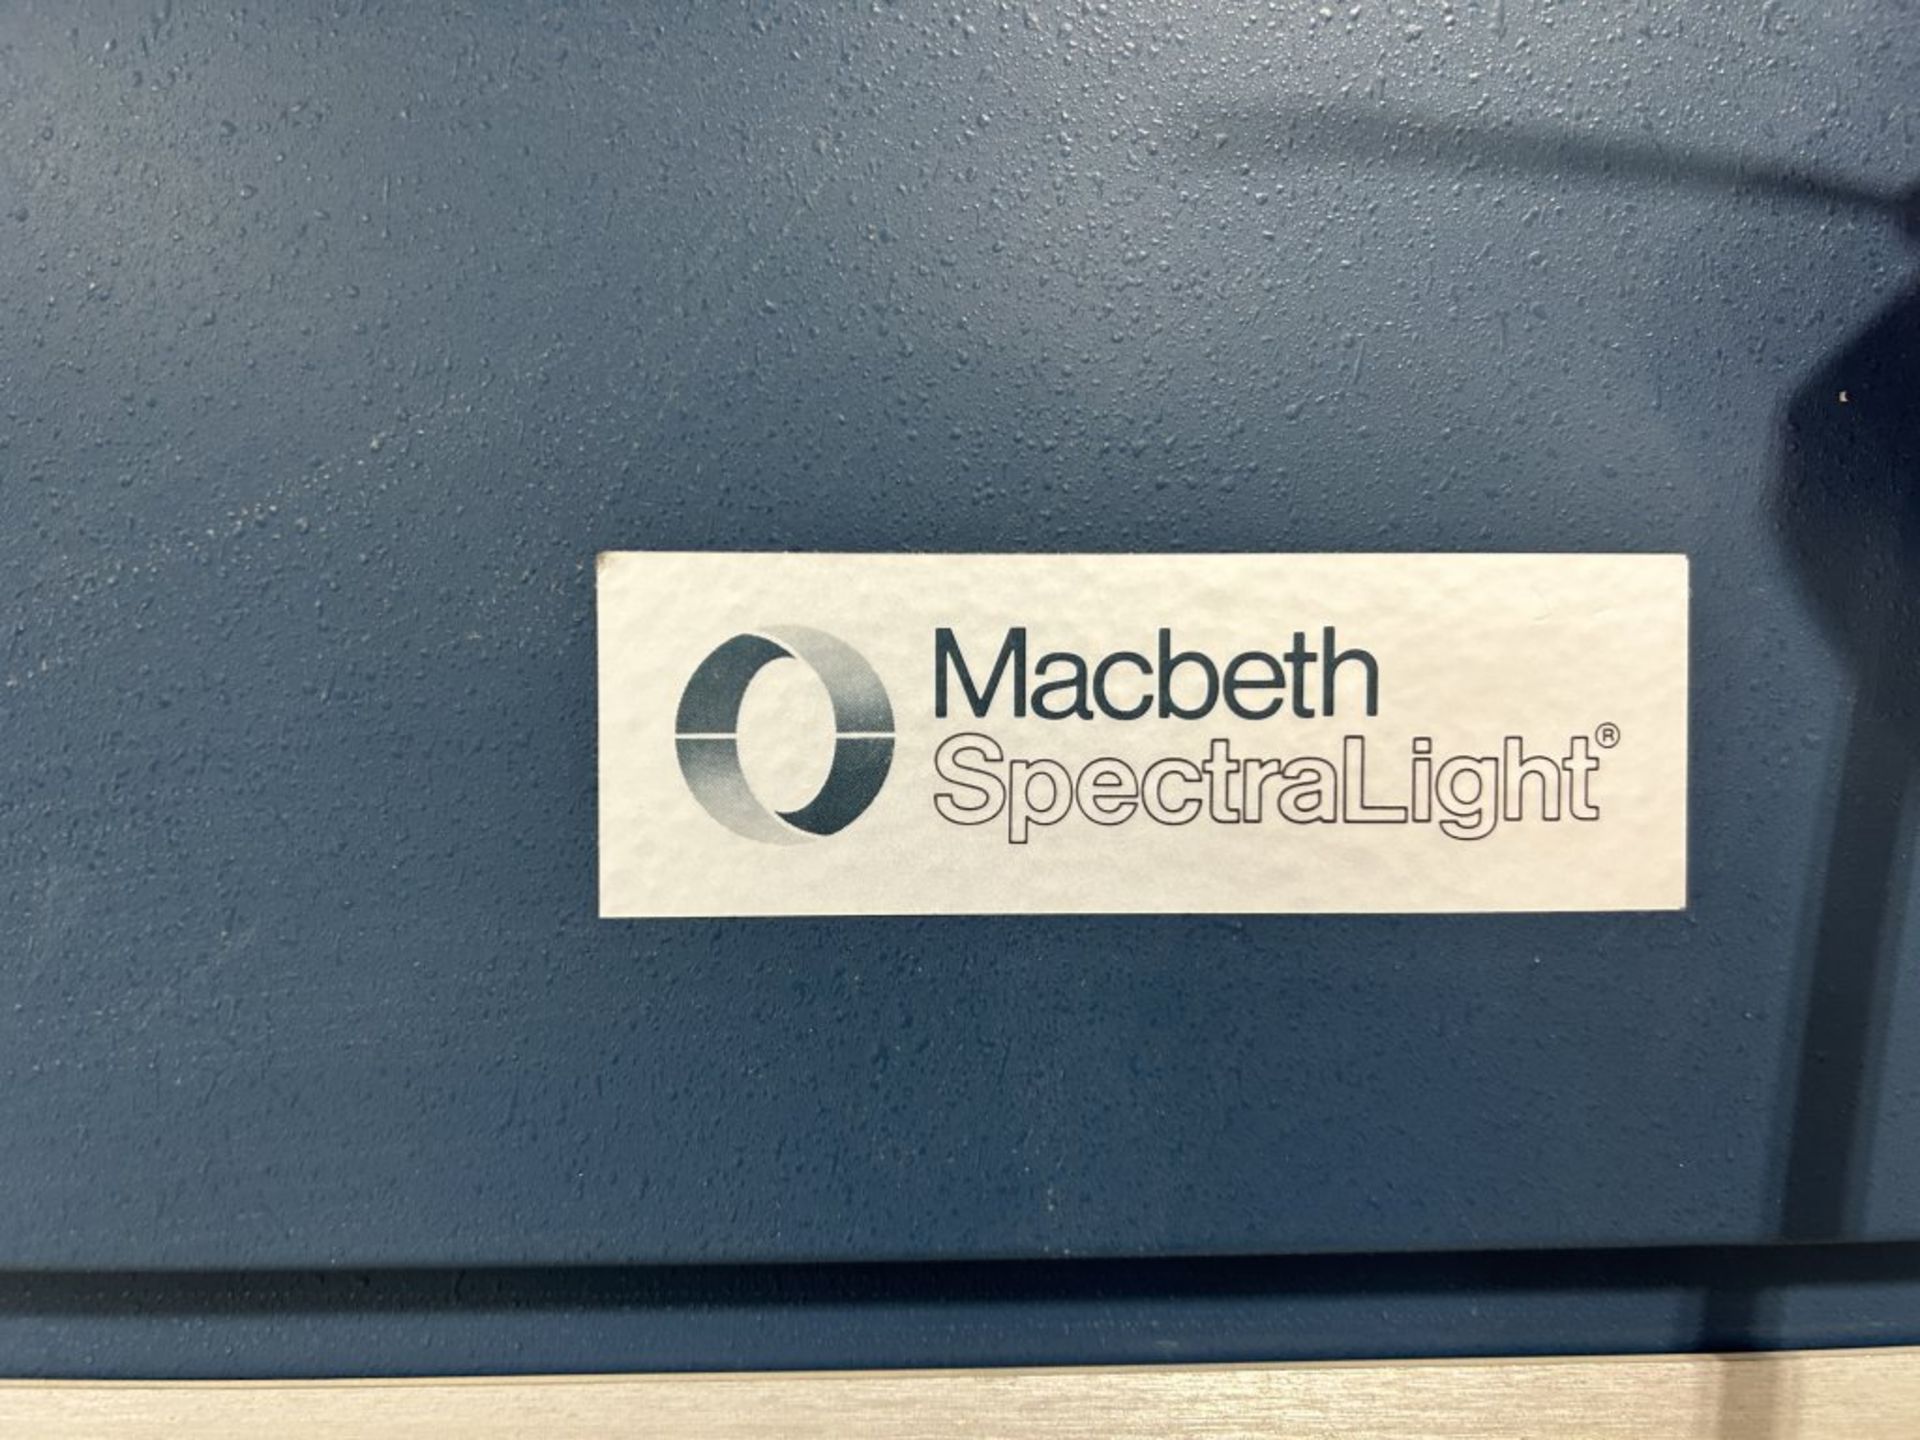 MACBETH SPECTRALIGHT PAINT LIGHT CABINET, 36'' W X 24'' D X 36'' T, 110 VOLT - Image 2 of 6